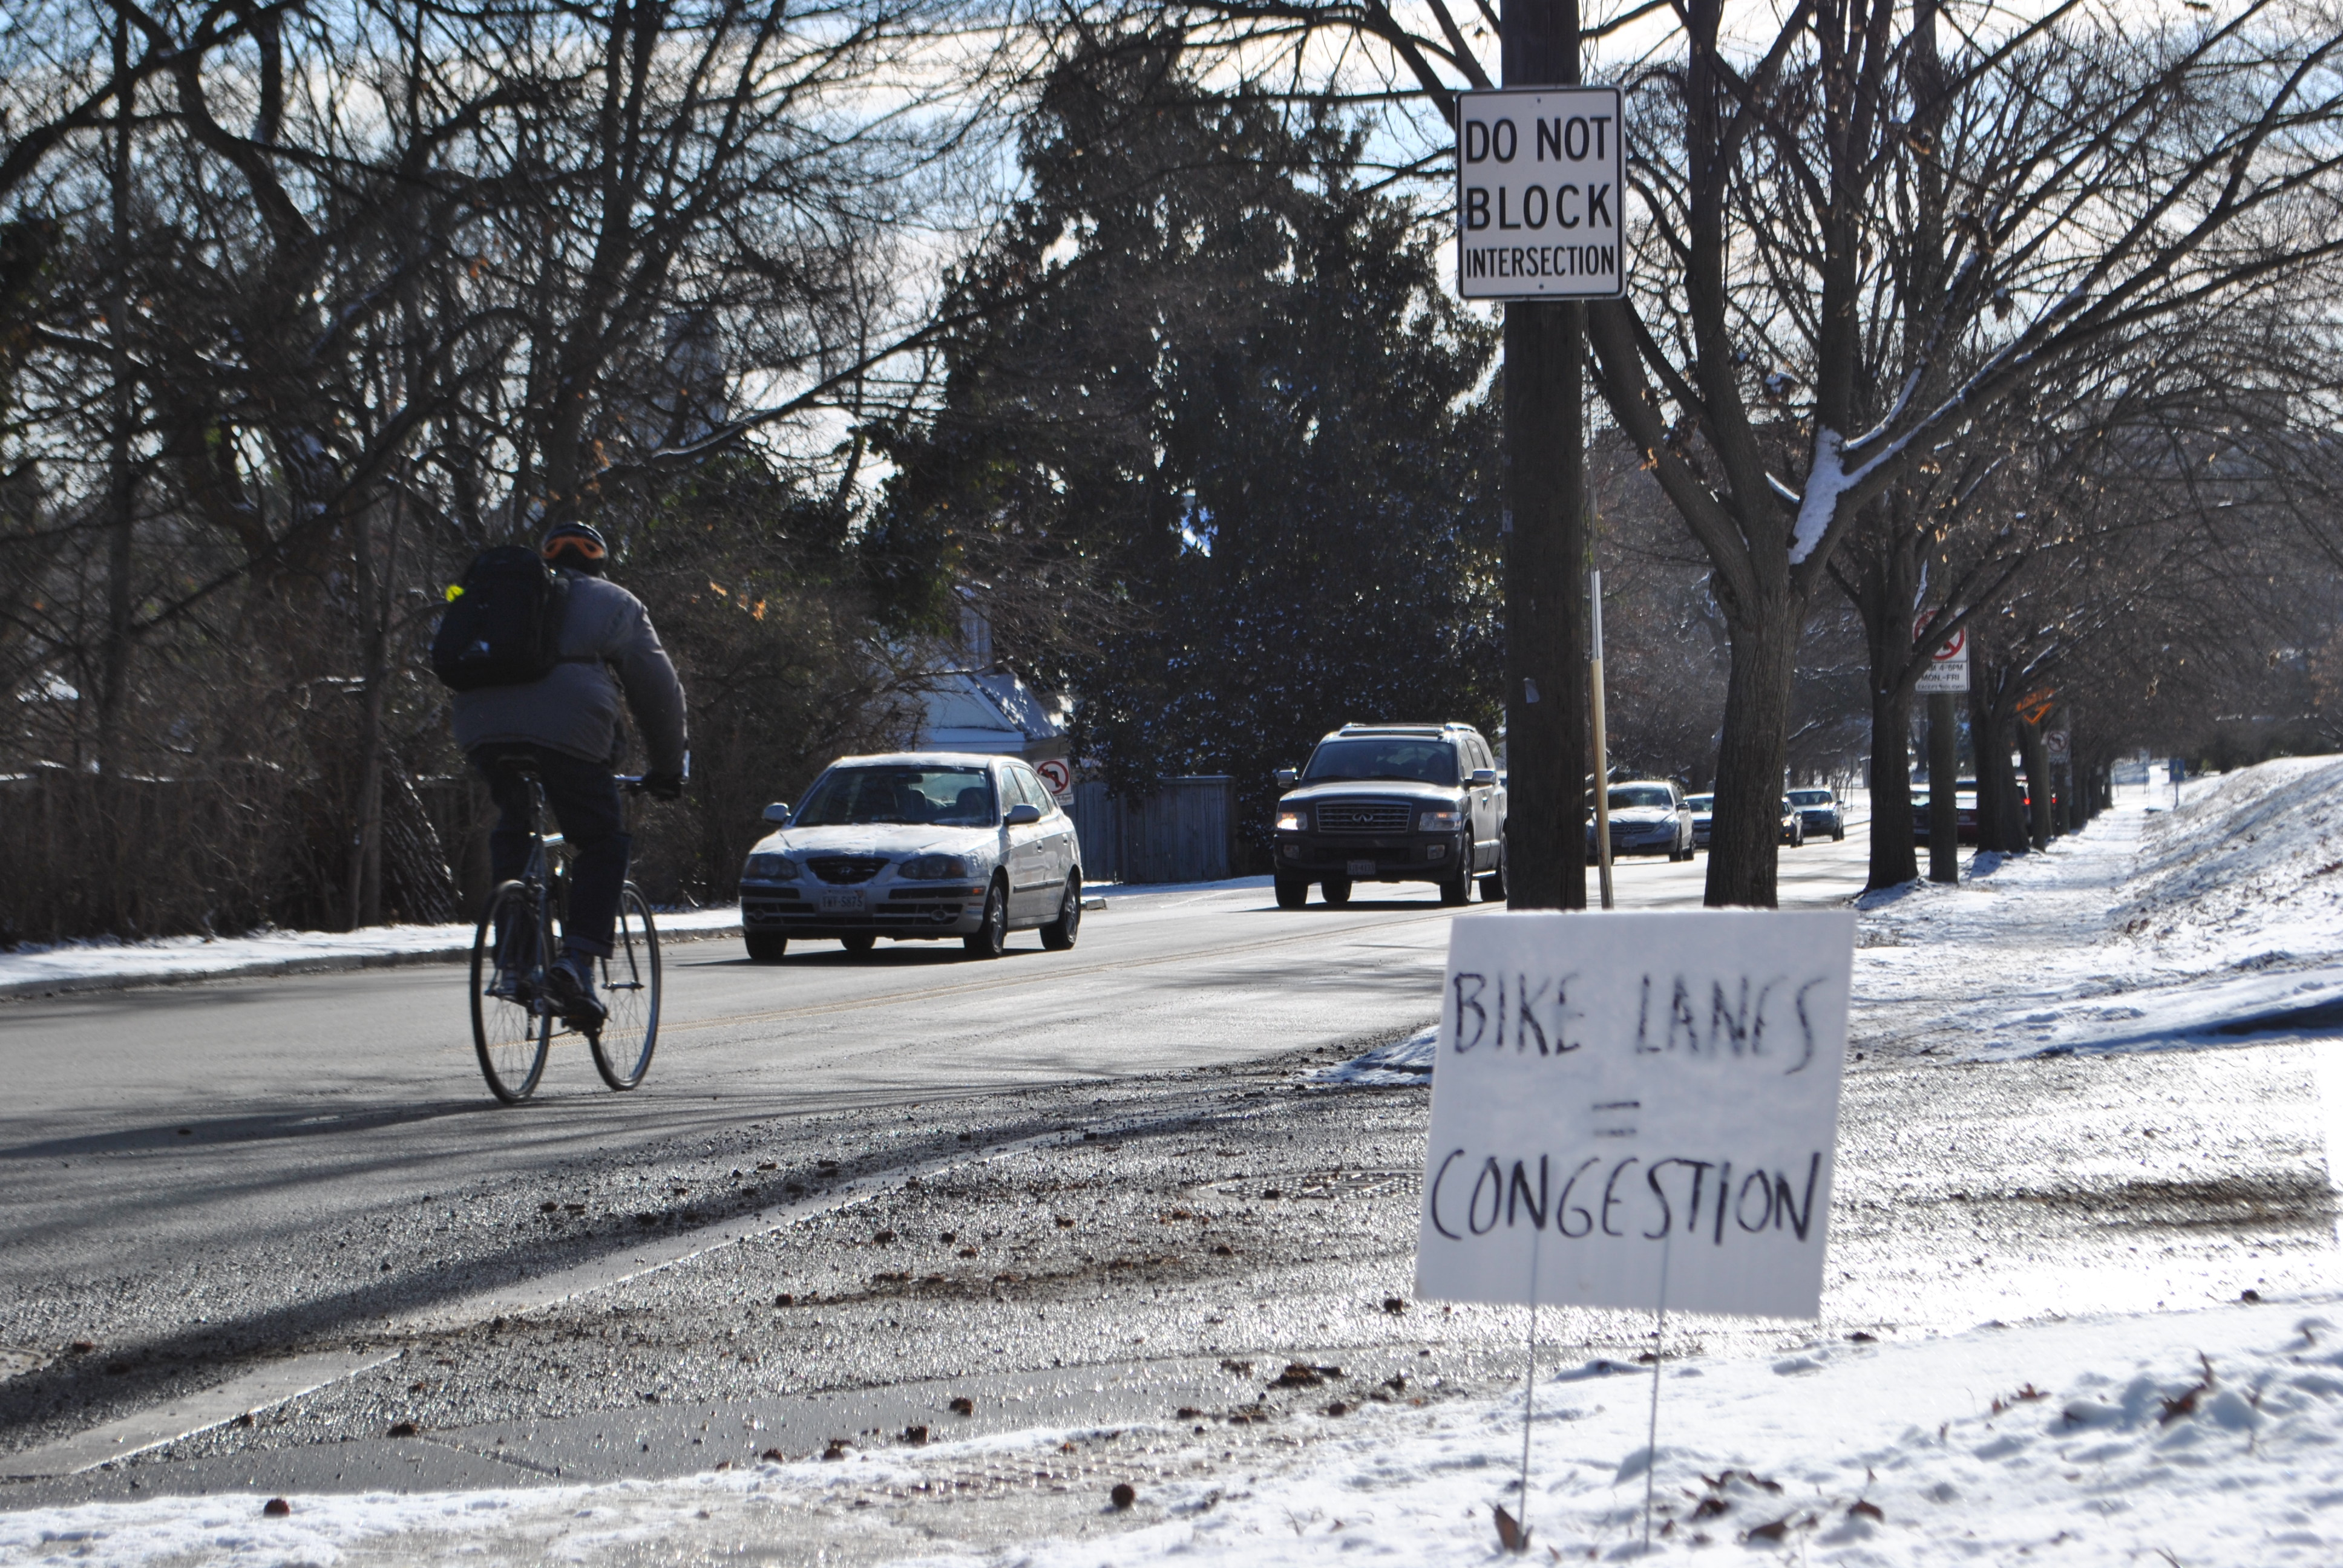 Give bike lanes a fair hearing